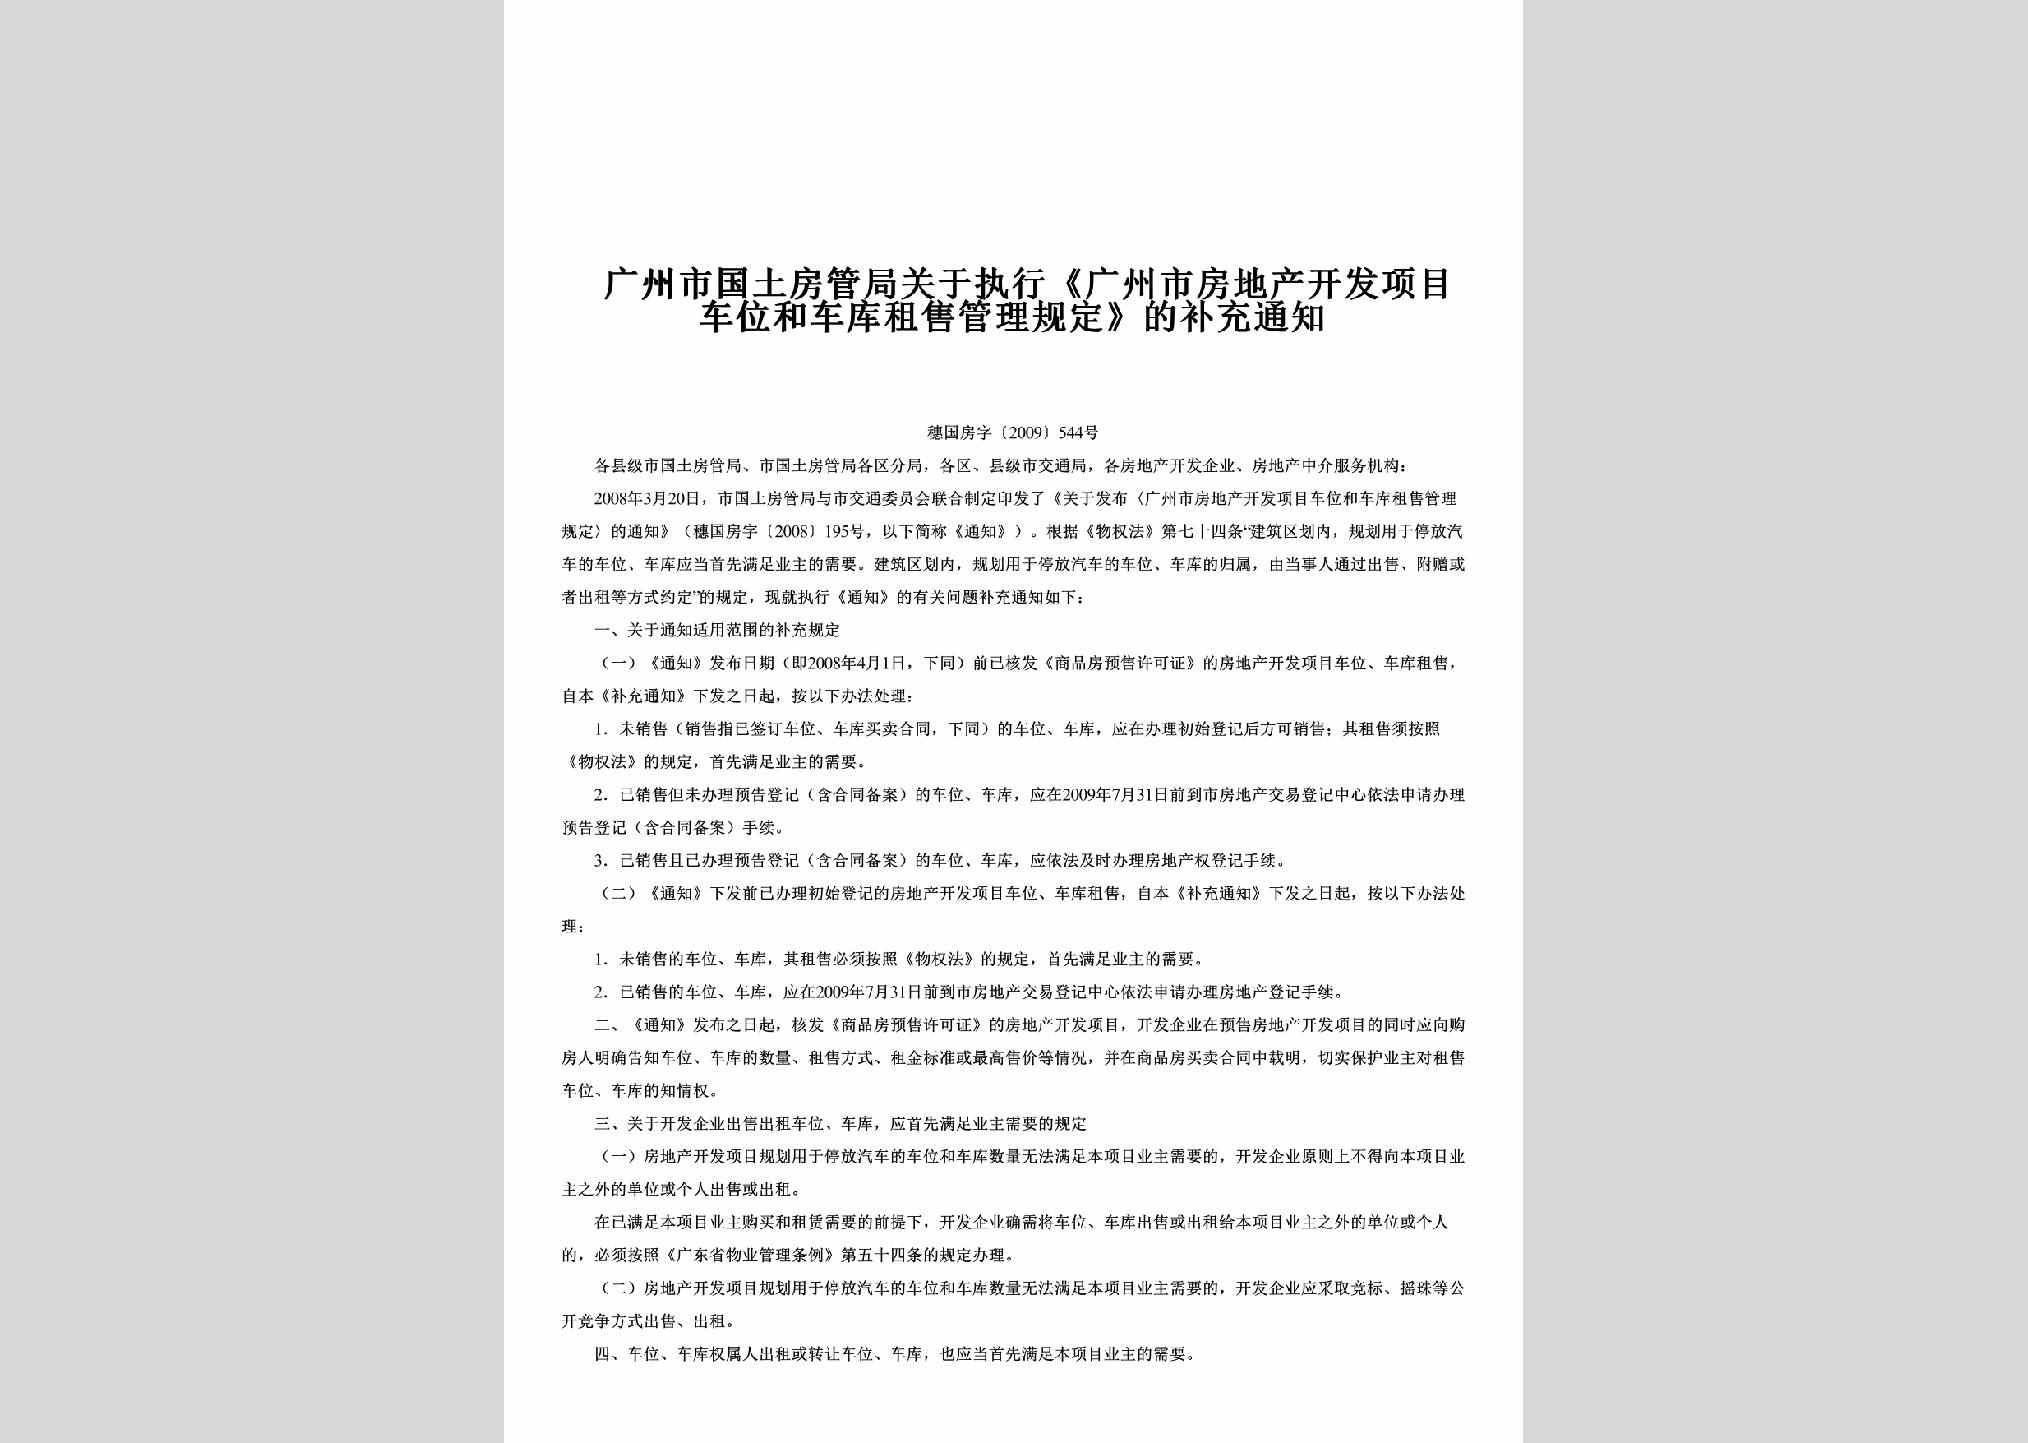 穗国房字[2009]544号：关于执行《广州市房地产开发项目车位和车库租售管理规定》的补充通知